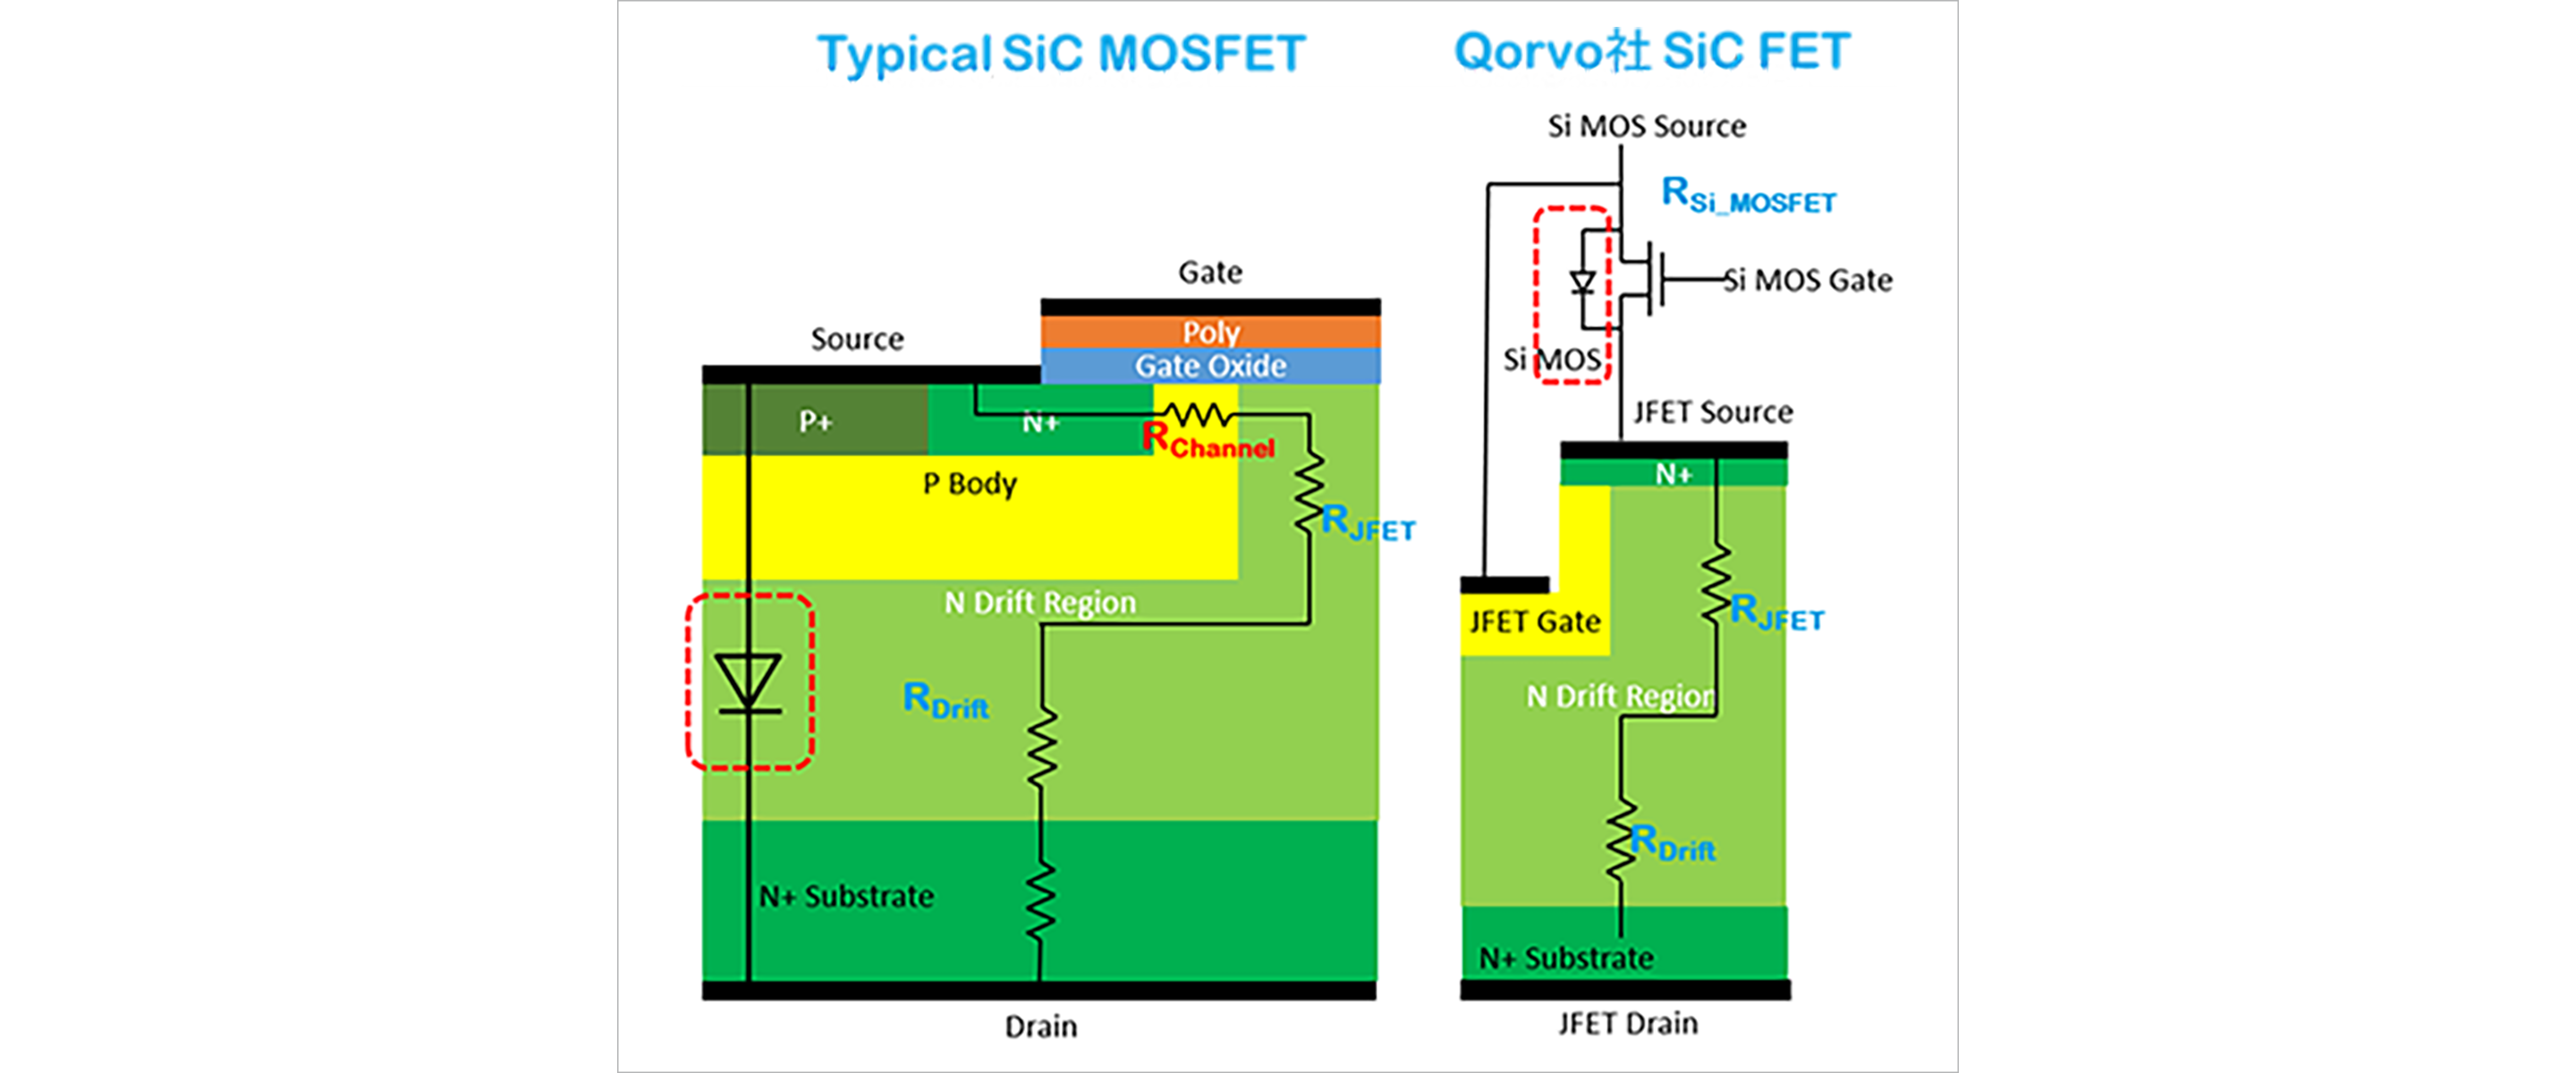 図1：一般的なSiCMOSFETおよびQorvo社SiC FETの概略断面図